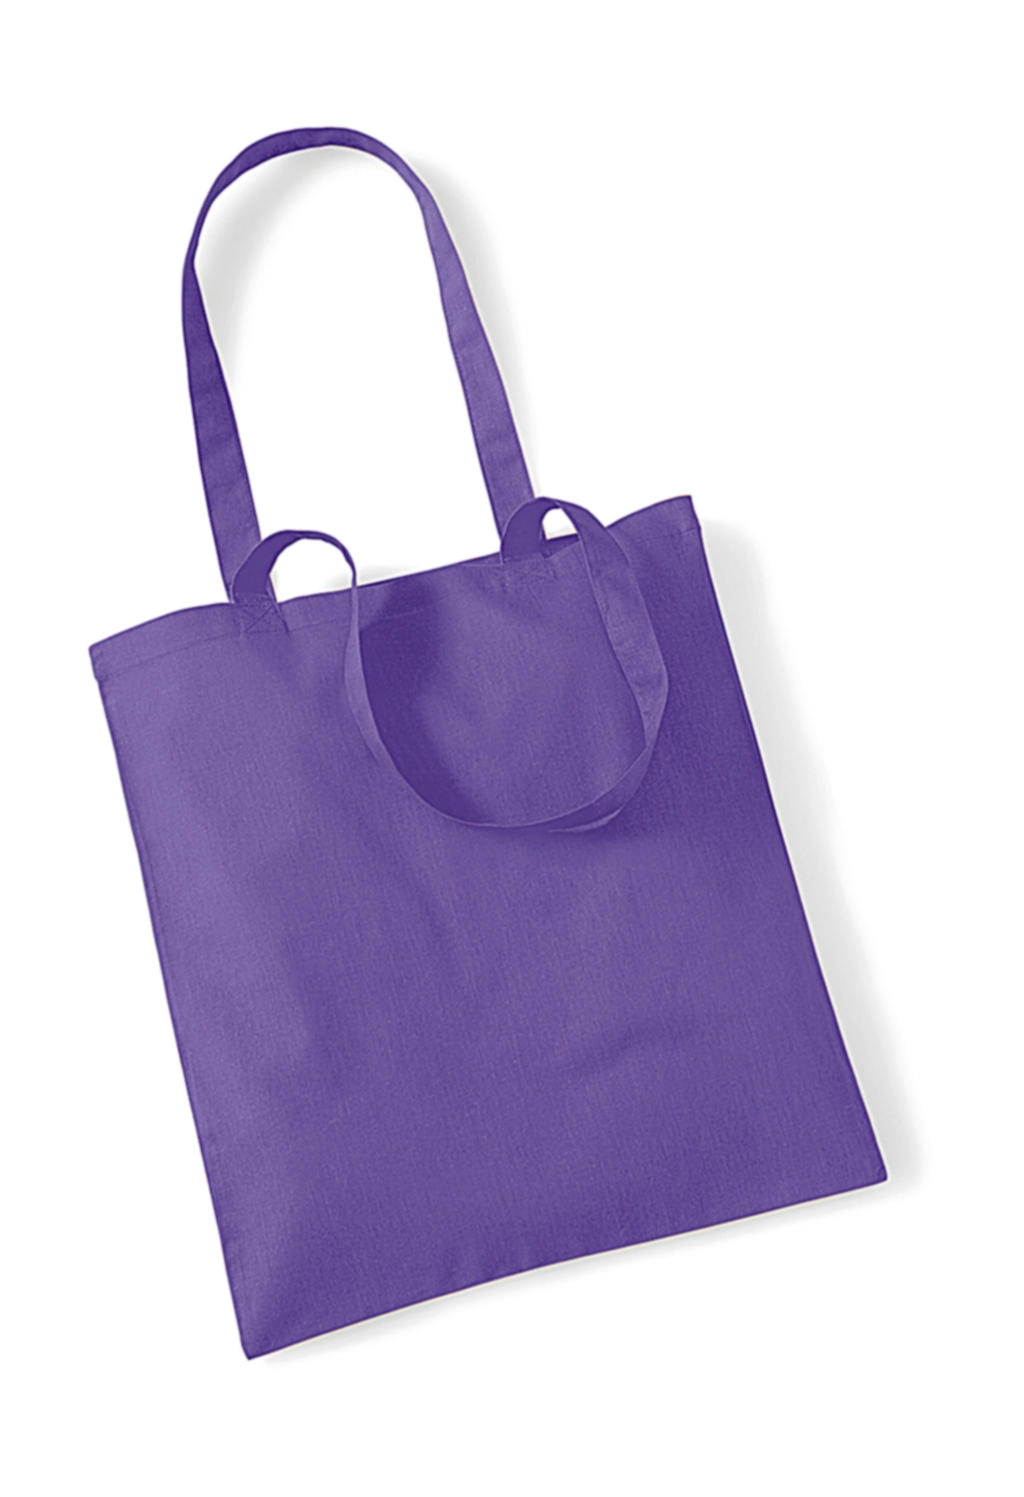 Bag for Life - Long Handles zum Besticken und Bedrucken in der Farbe Violet mit Ihren Logo, Schriftzug oder Motiv.